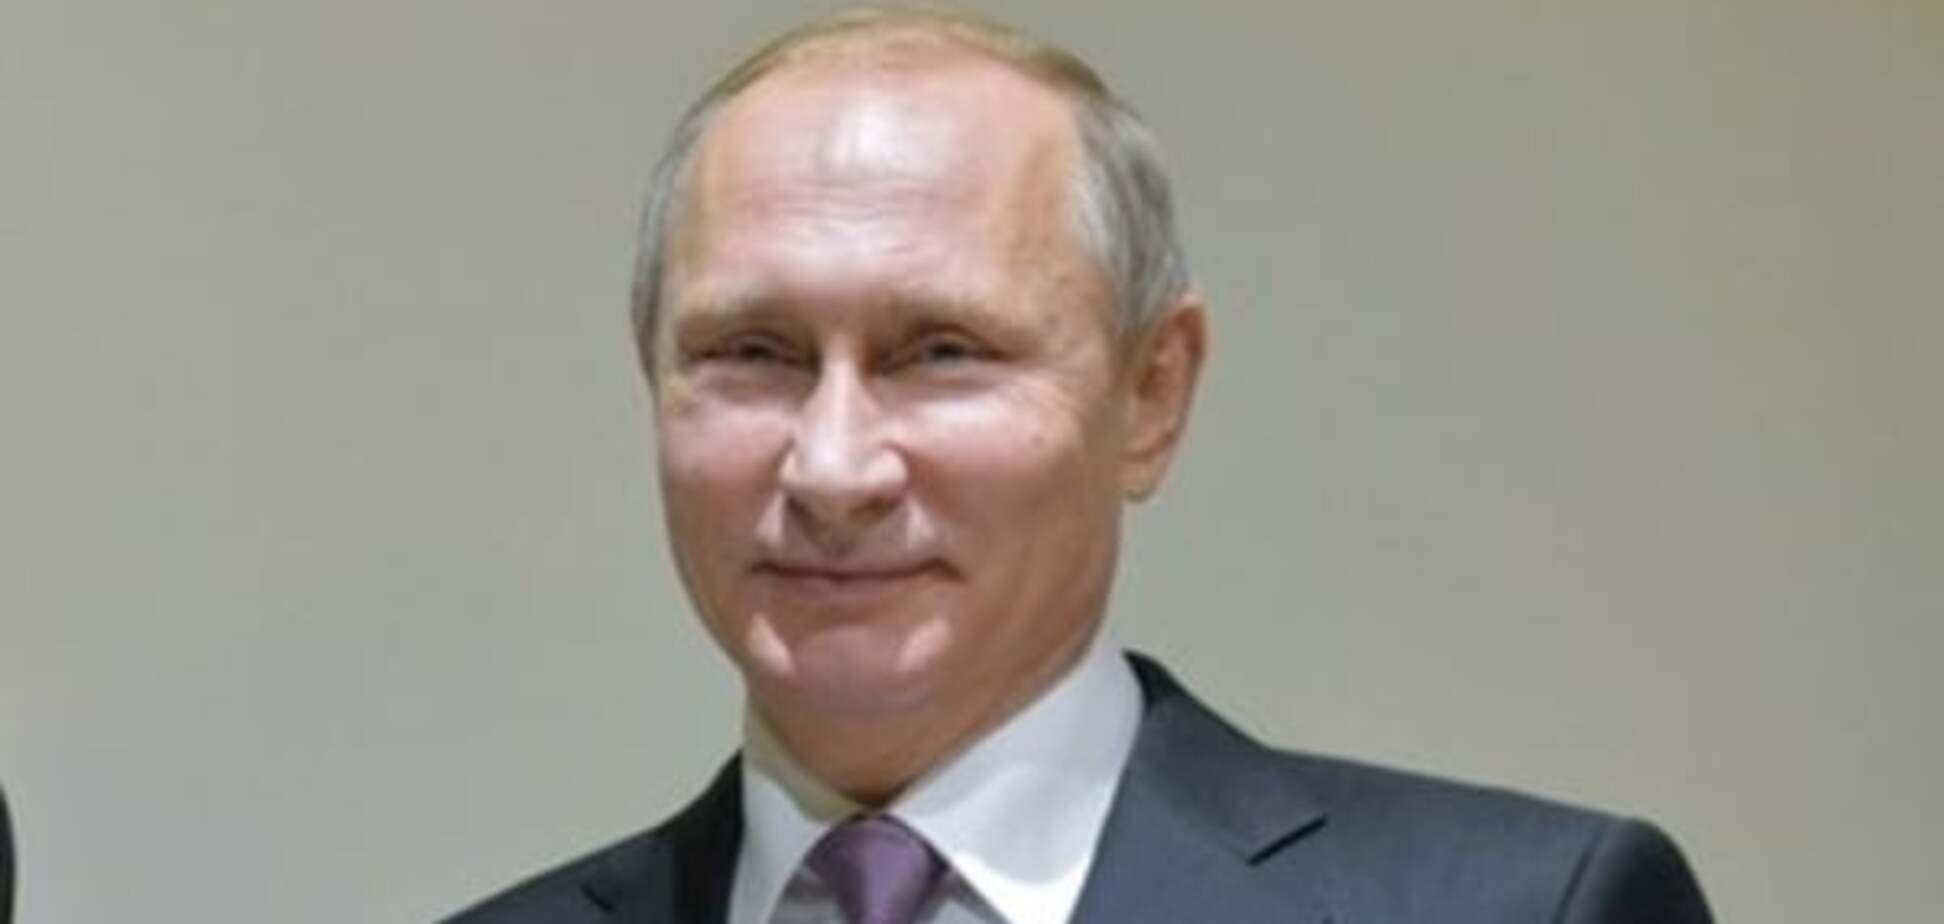 Порошенко на зависть: в России слепили шоколадного Путина